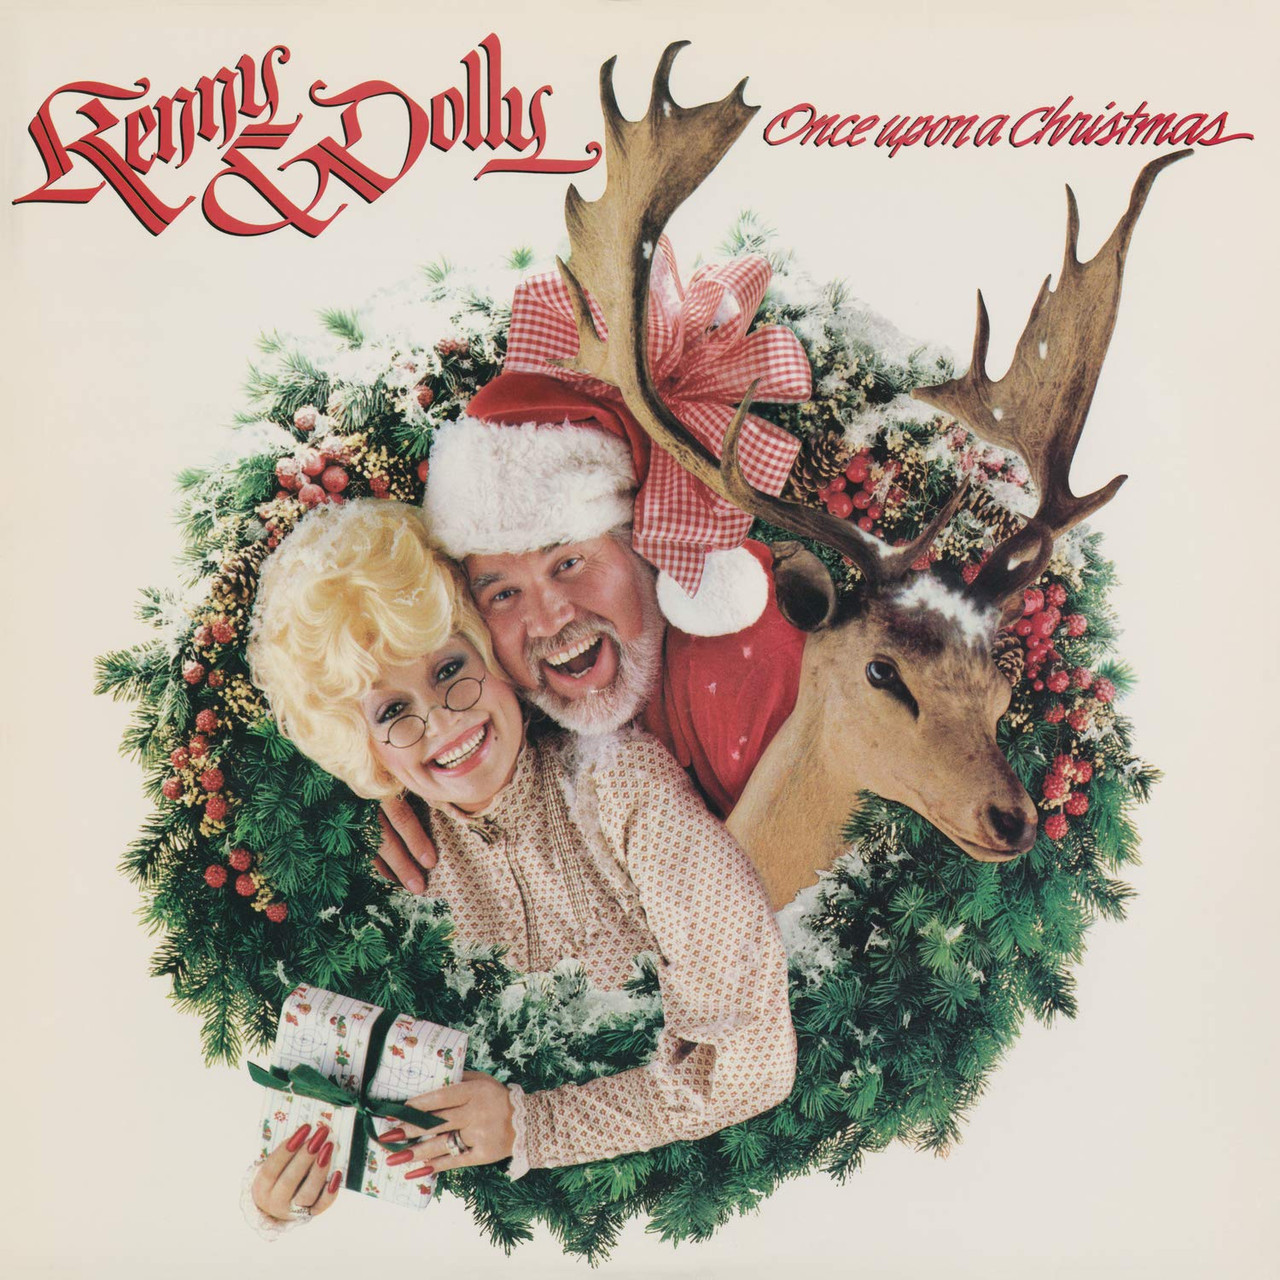 Holly Dolly Christmas Holiday Family Pajama Sets Blue - Family